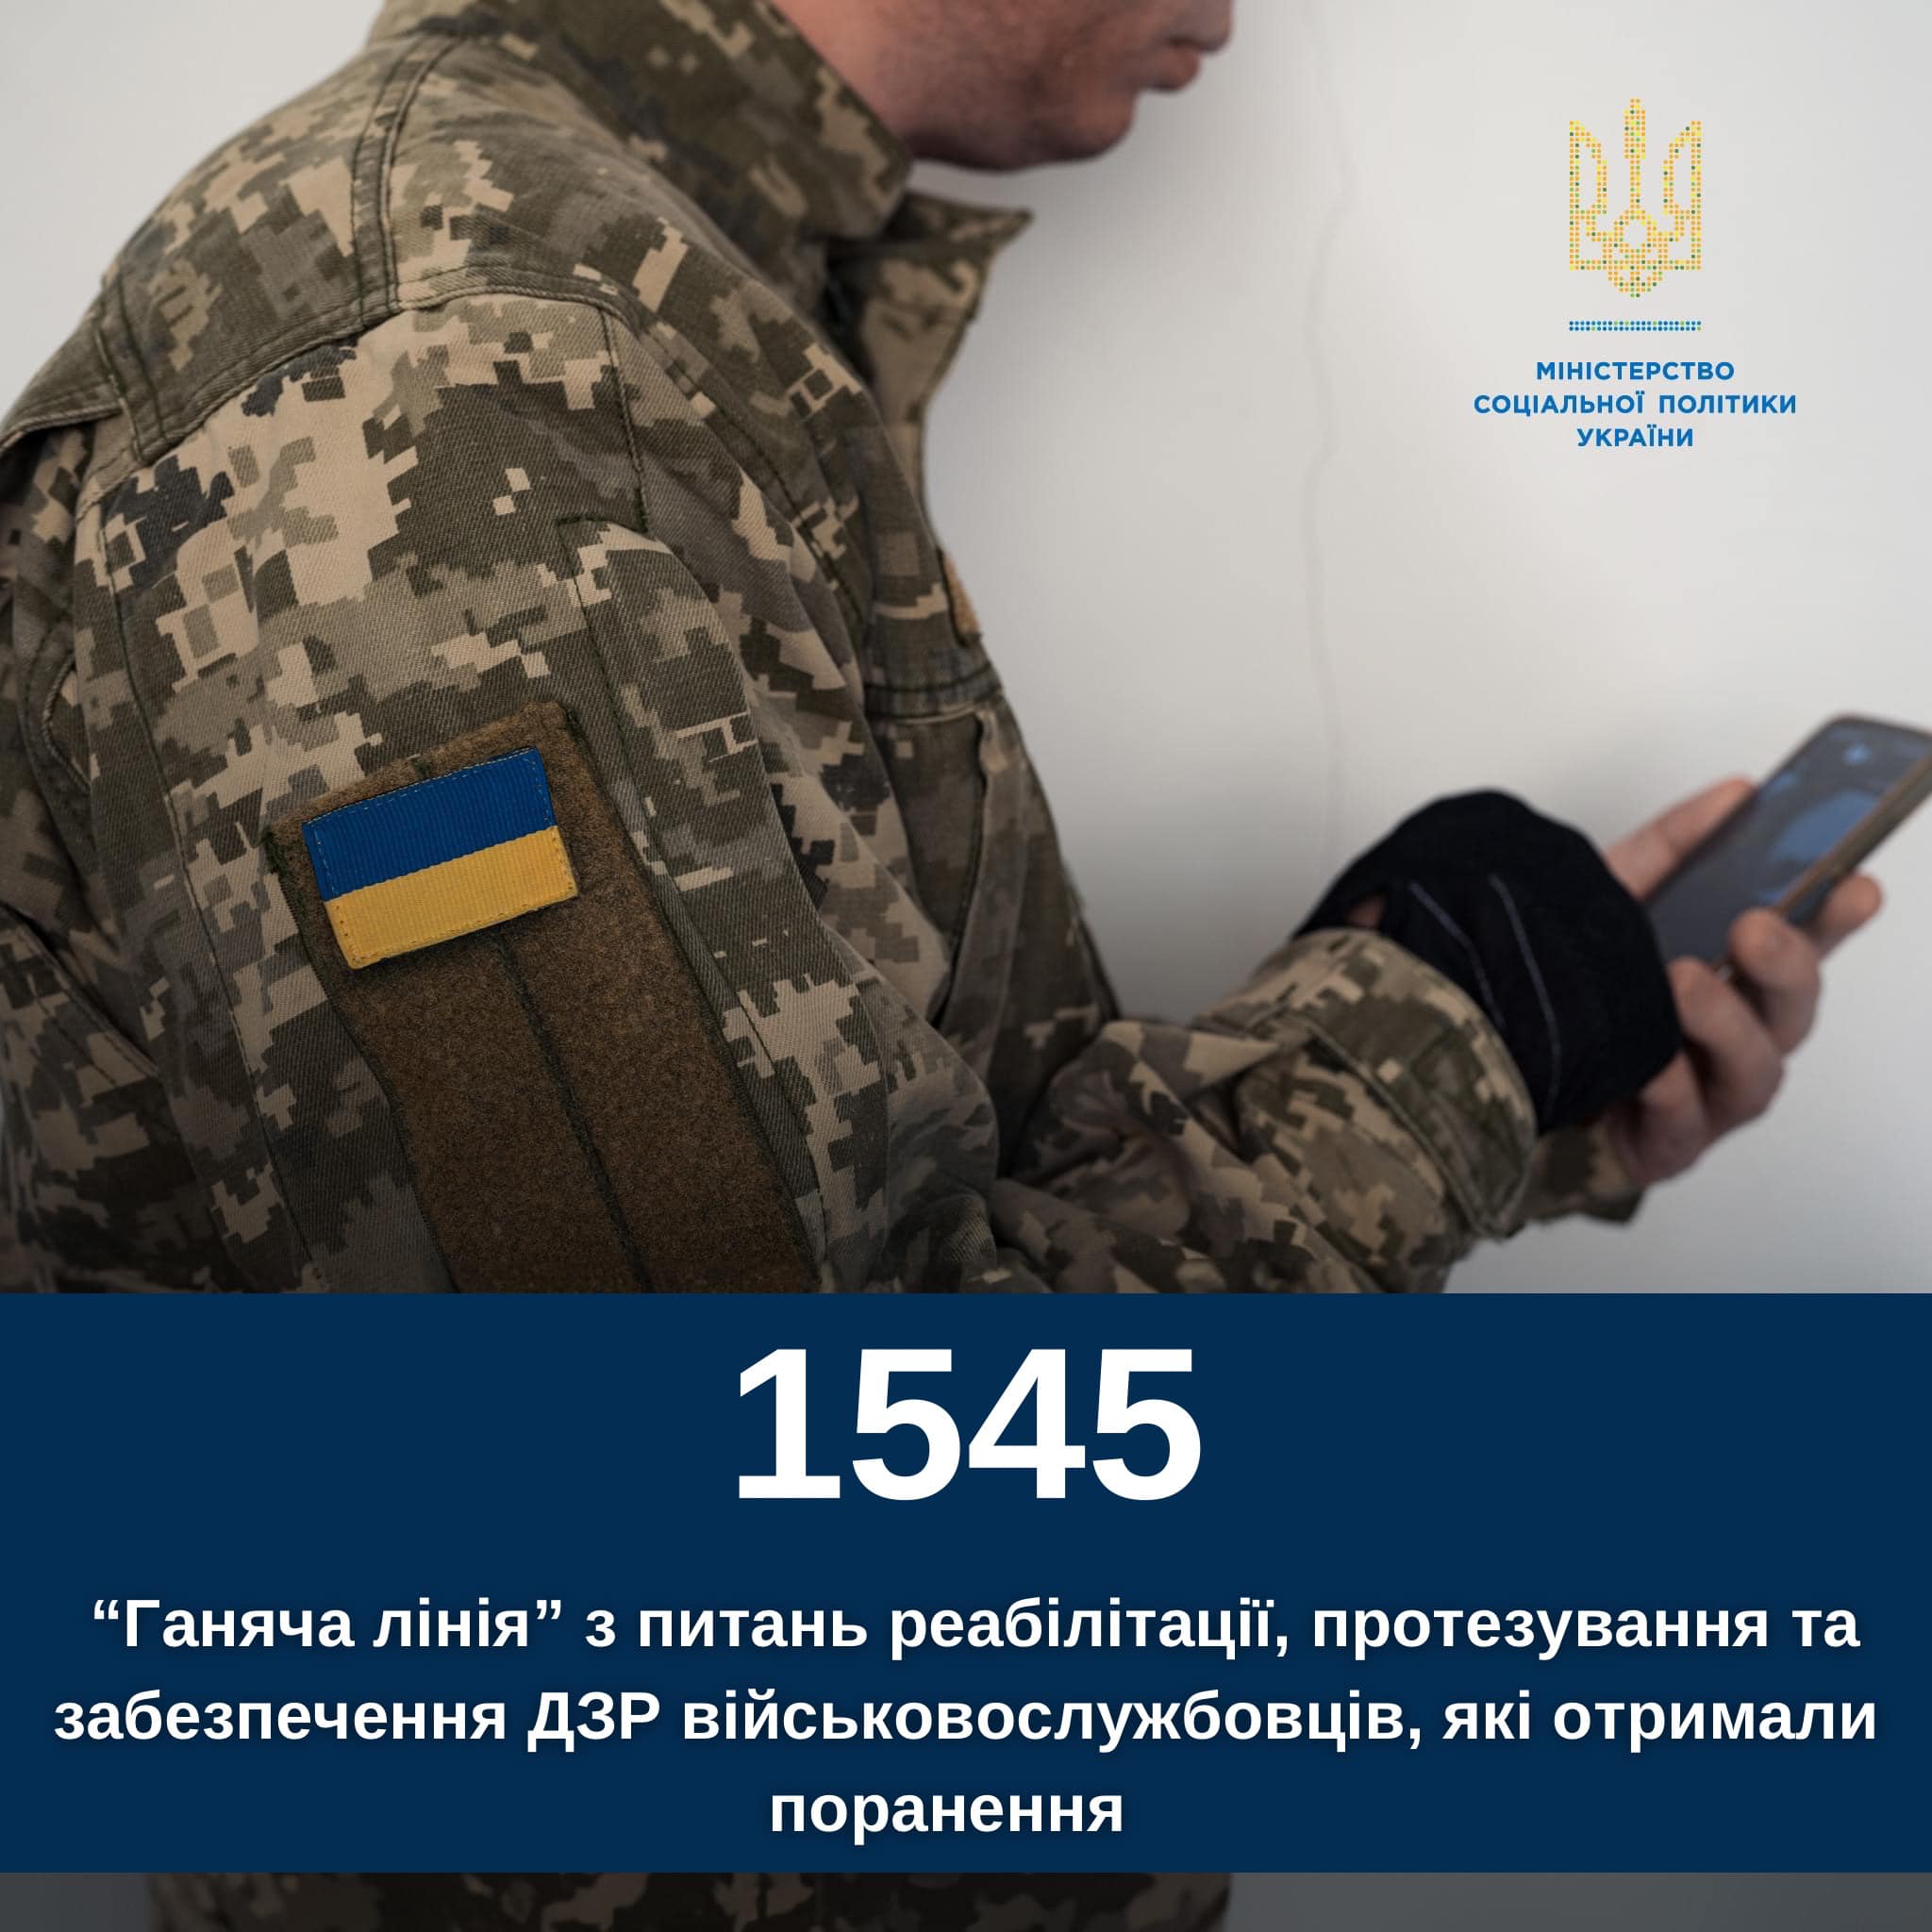 В Україні запрацювала «гаряча лінія» з питань реабілітації та протезування військовослужбовців